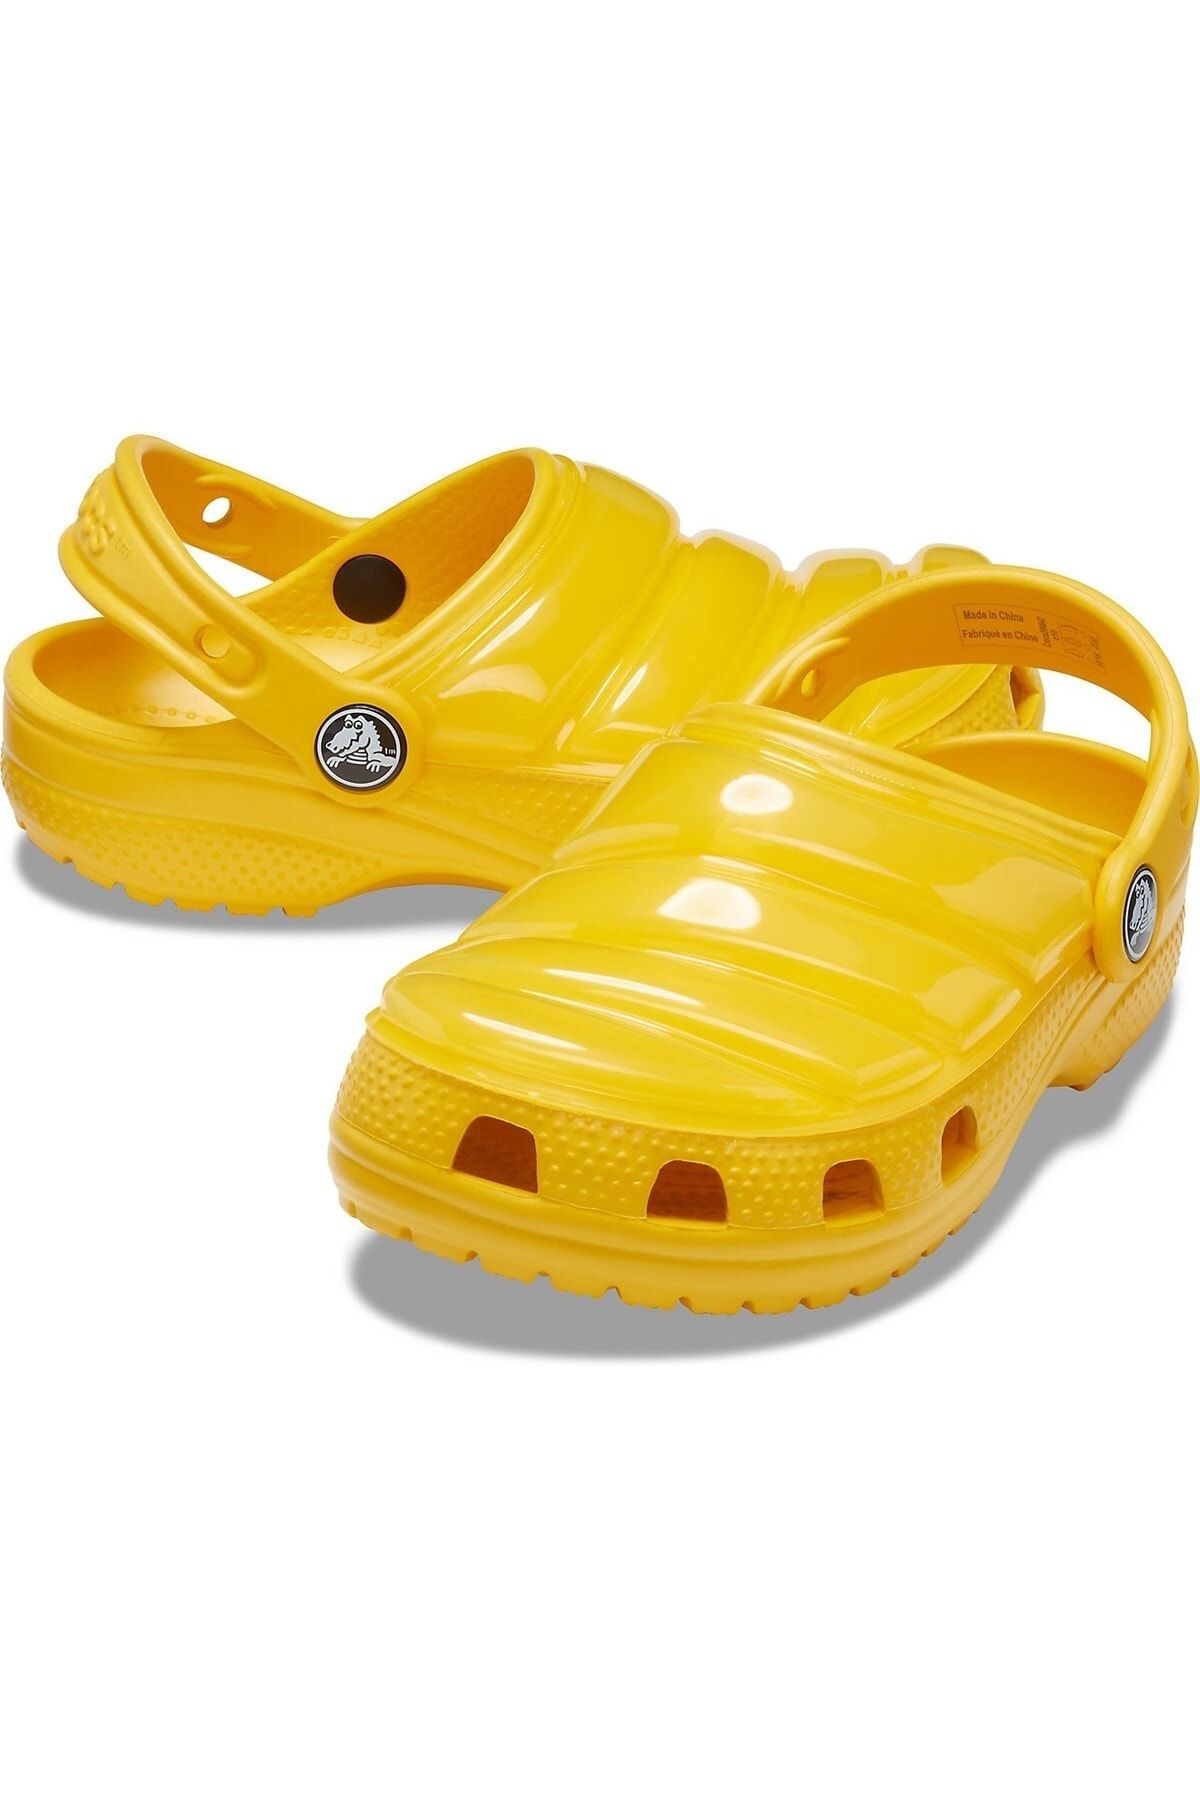 Crocs Classic Neo Puff Clog Sarı 206647-700 Çocuk